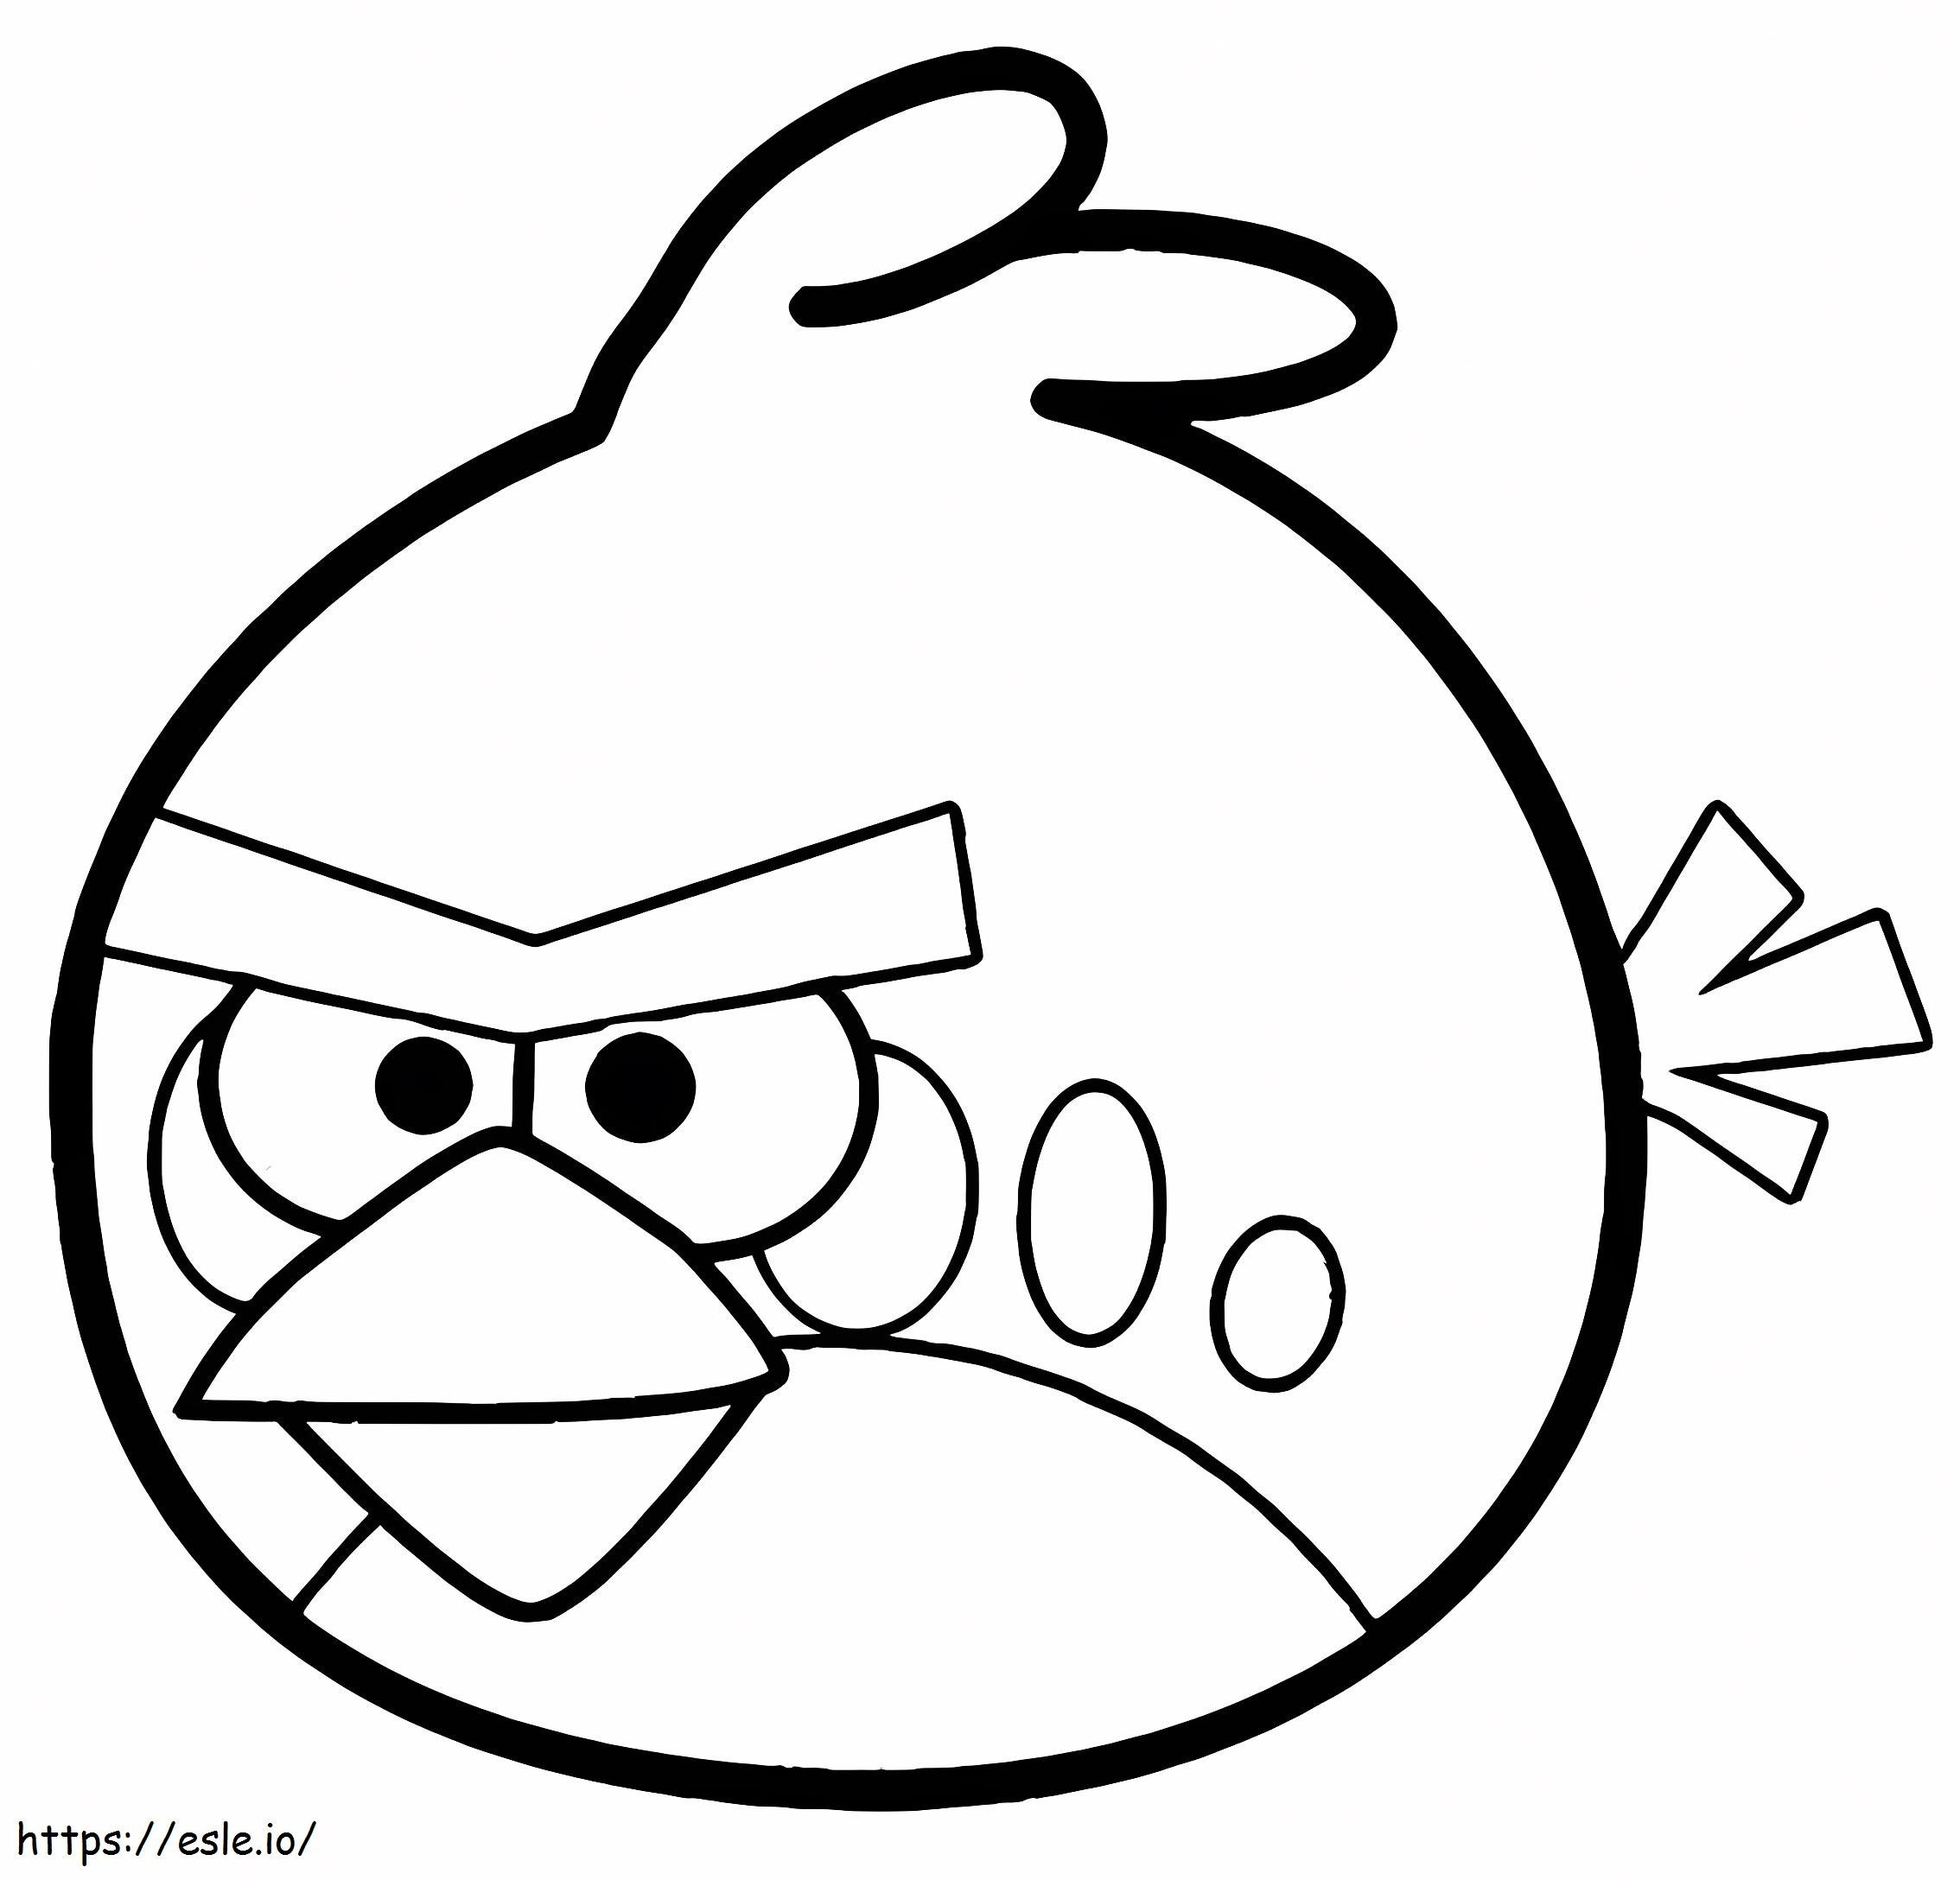 Beeindruckende Angry Birds ausmalbilder